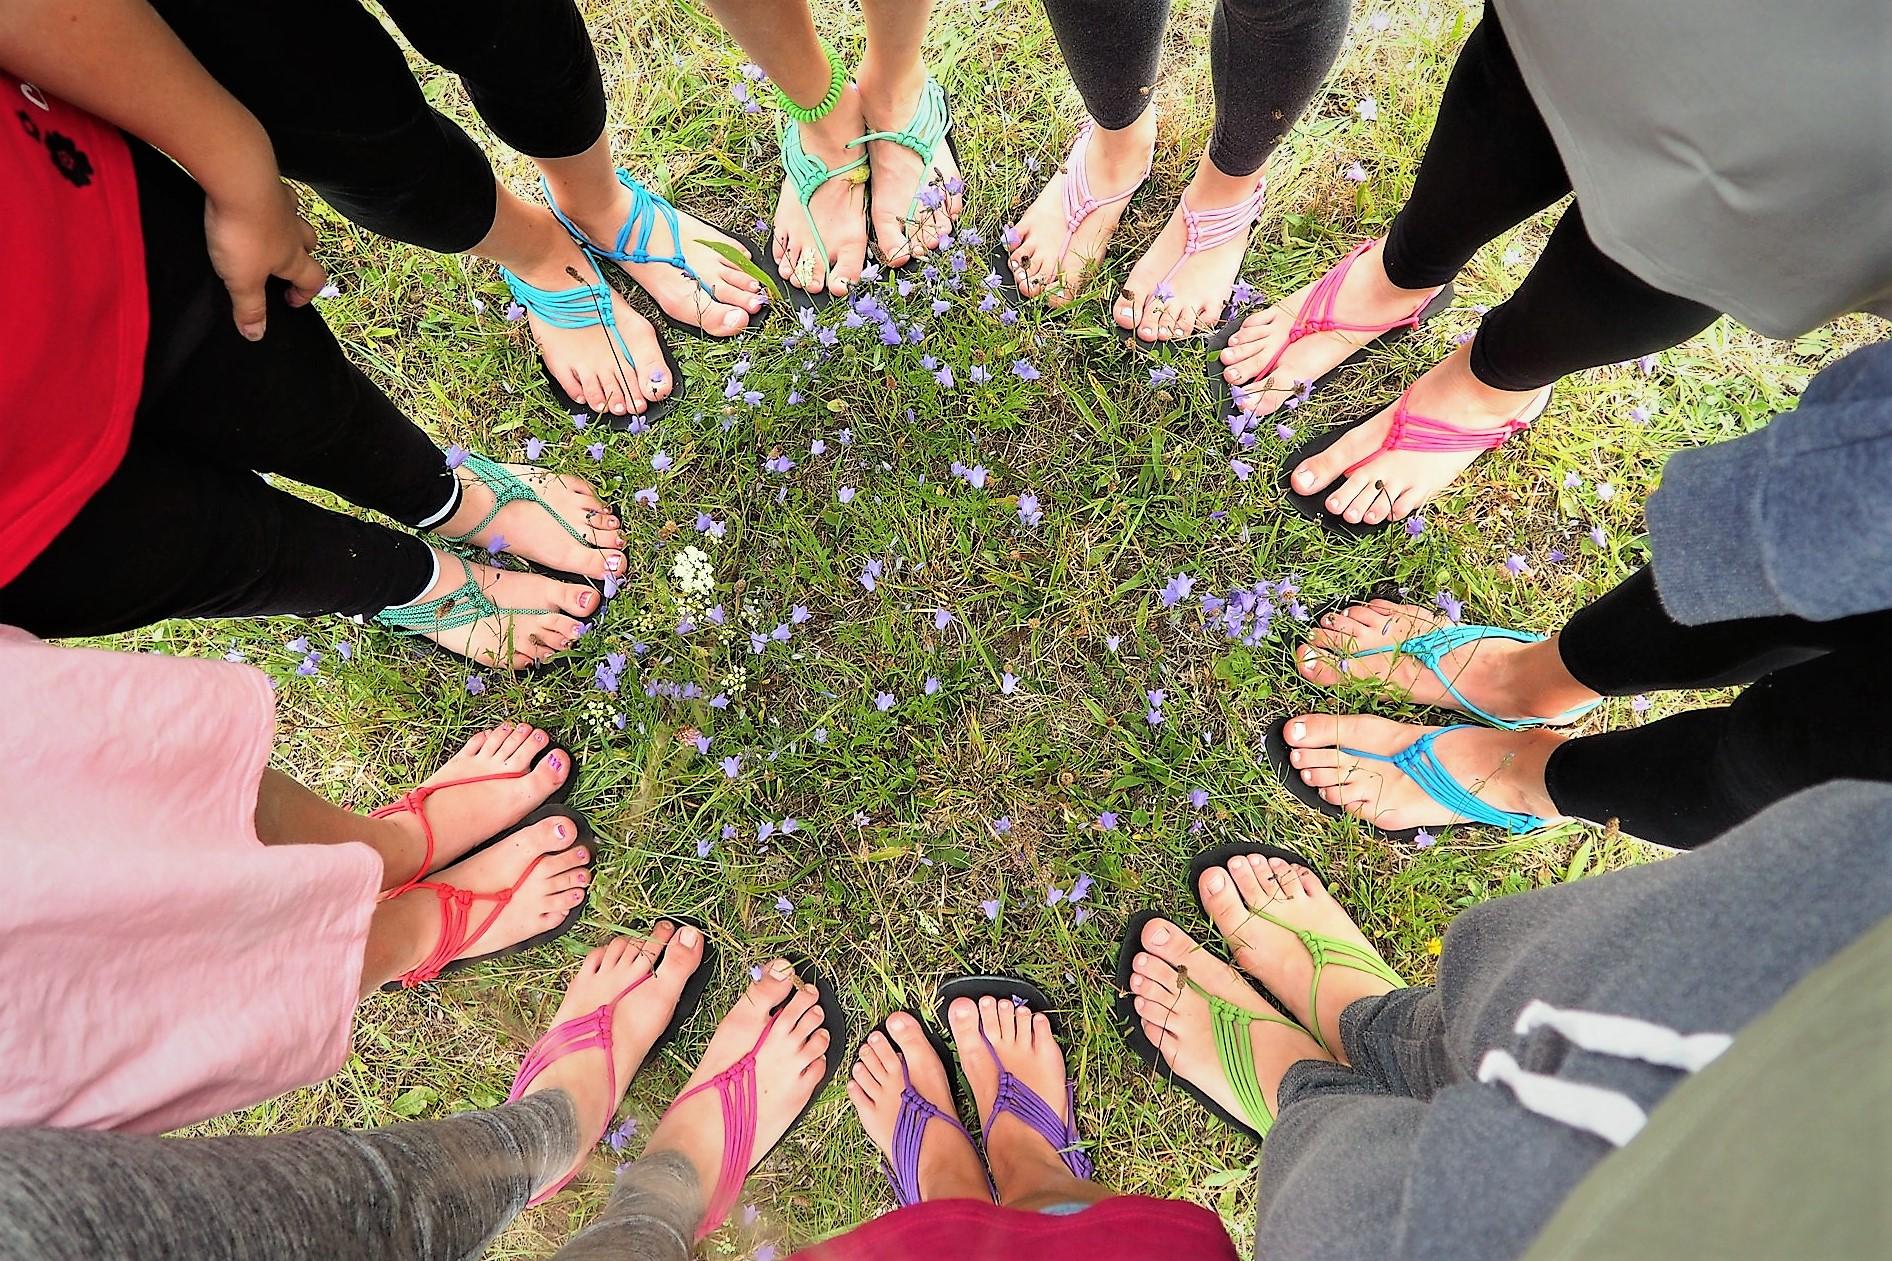 Barefoot sandály (10:00-12:30) - Kreativní den v Lužánkách